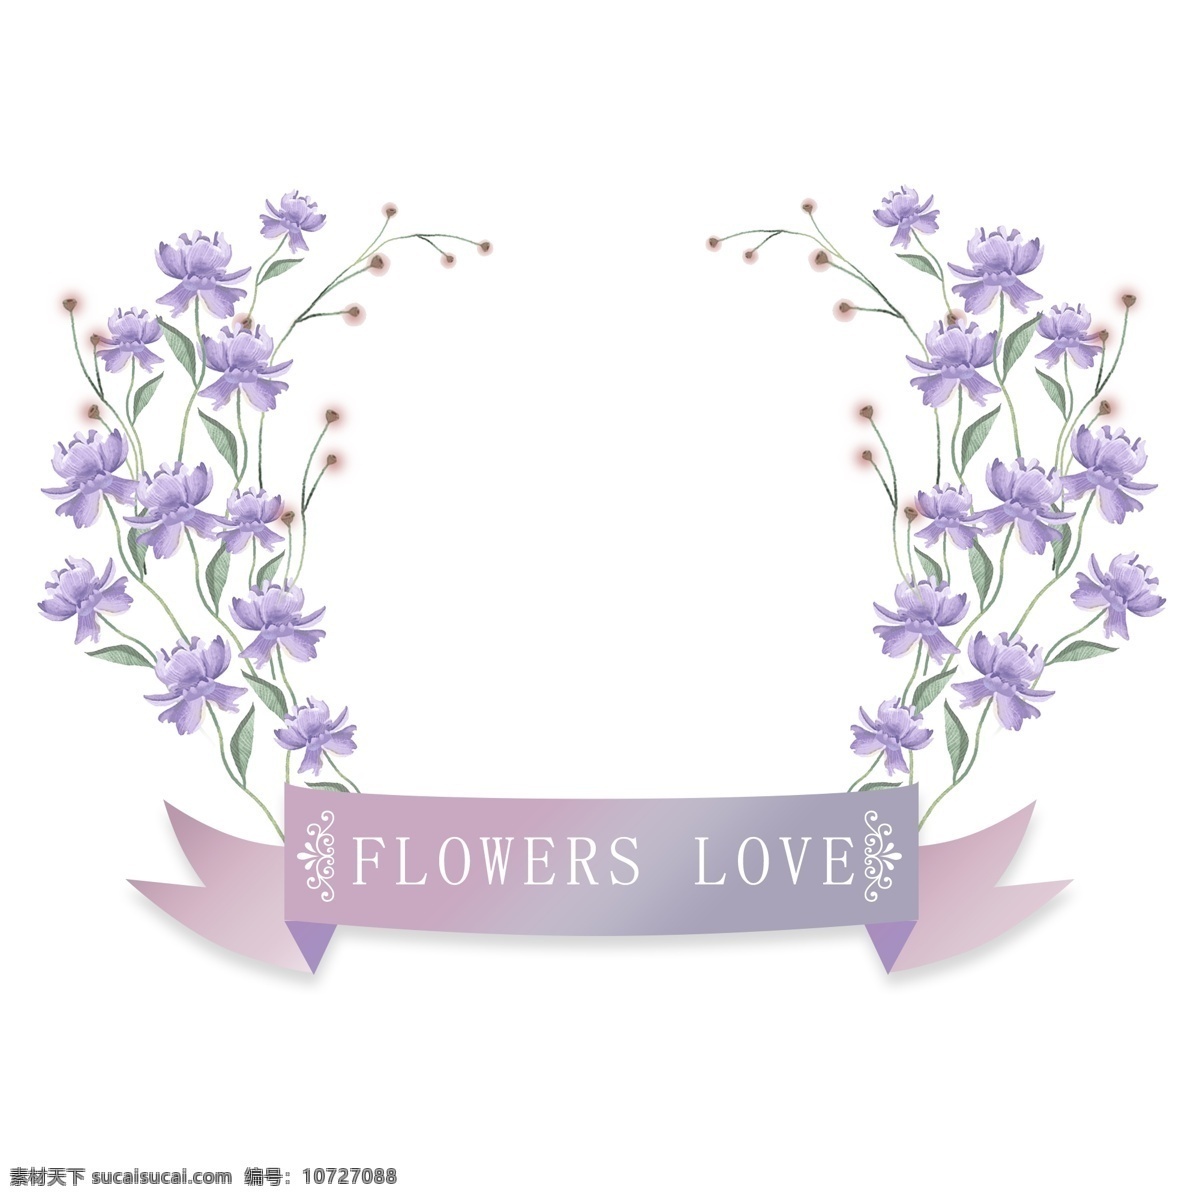 紫色 浪漫 手绘 水彩 边框 唯美 清新 花卉 植物